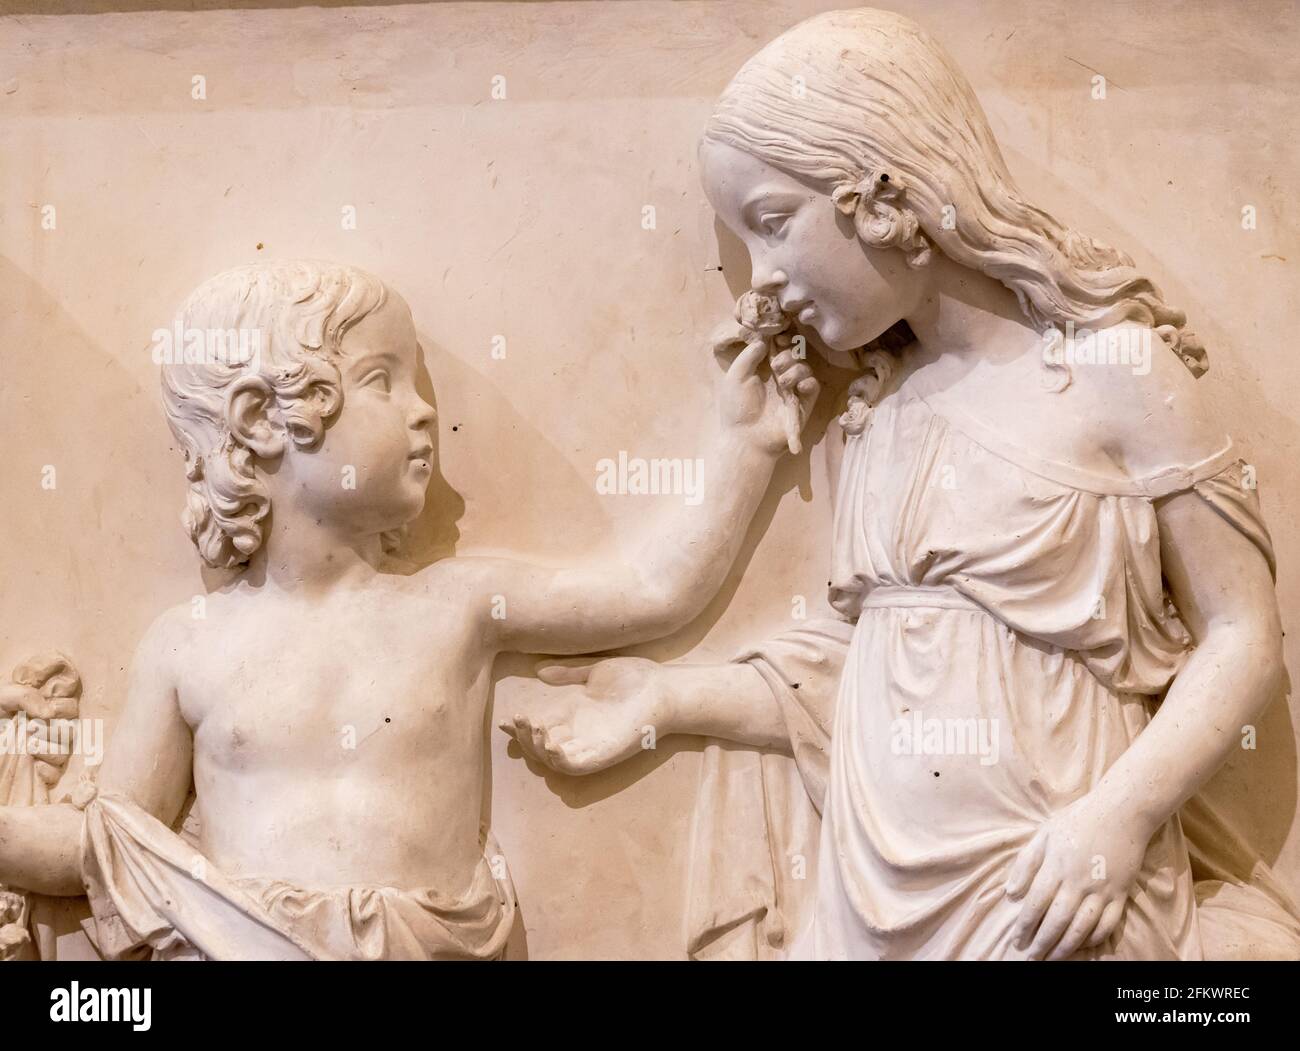 Gros plan sur des sculptures sculptées sur un mur en marbre montrant une fille odeur d'une fleur donnée par un garçon Banque D'Images